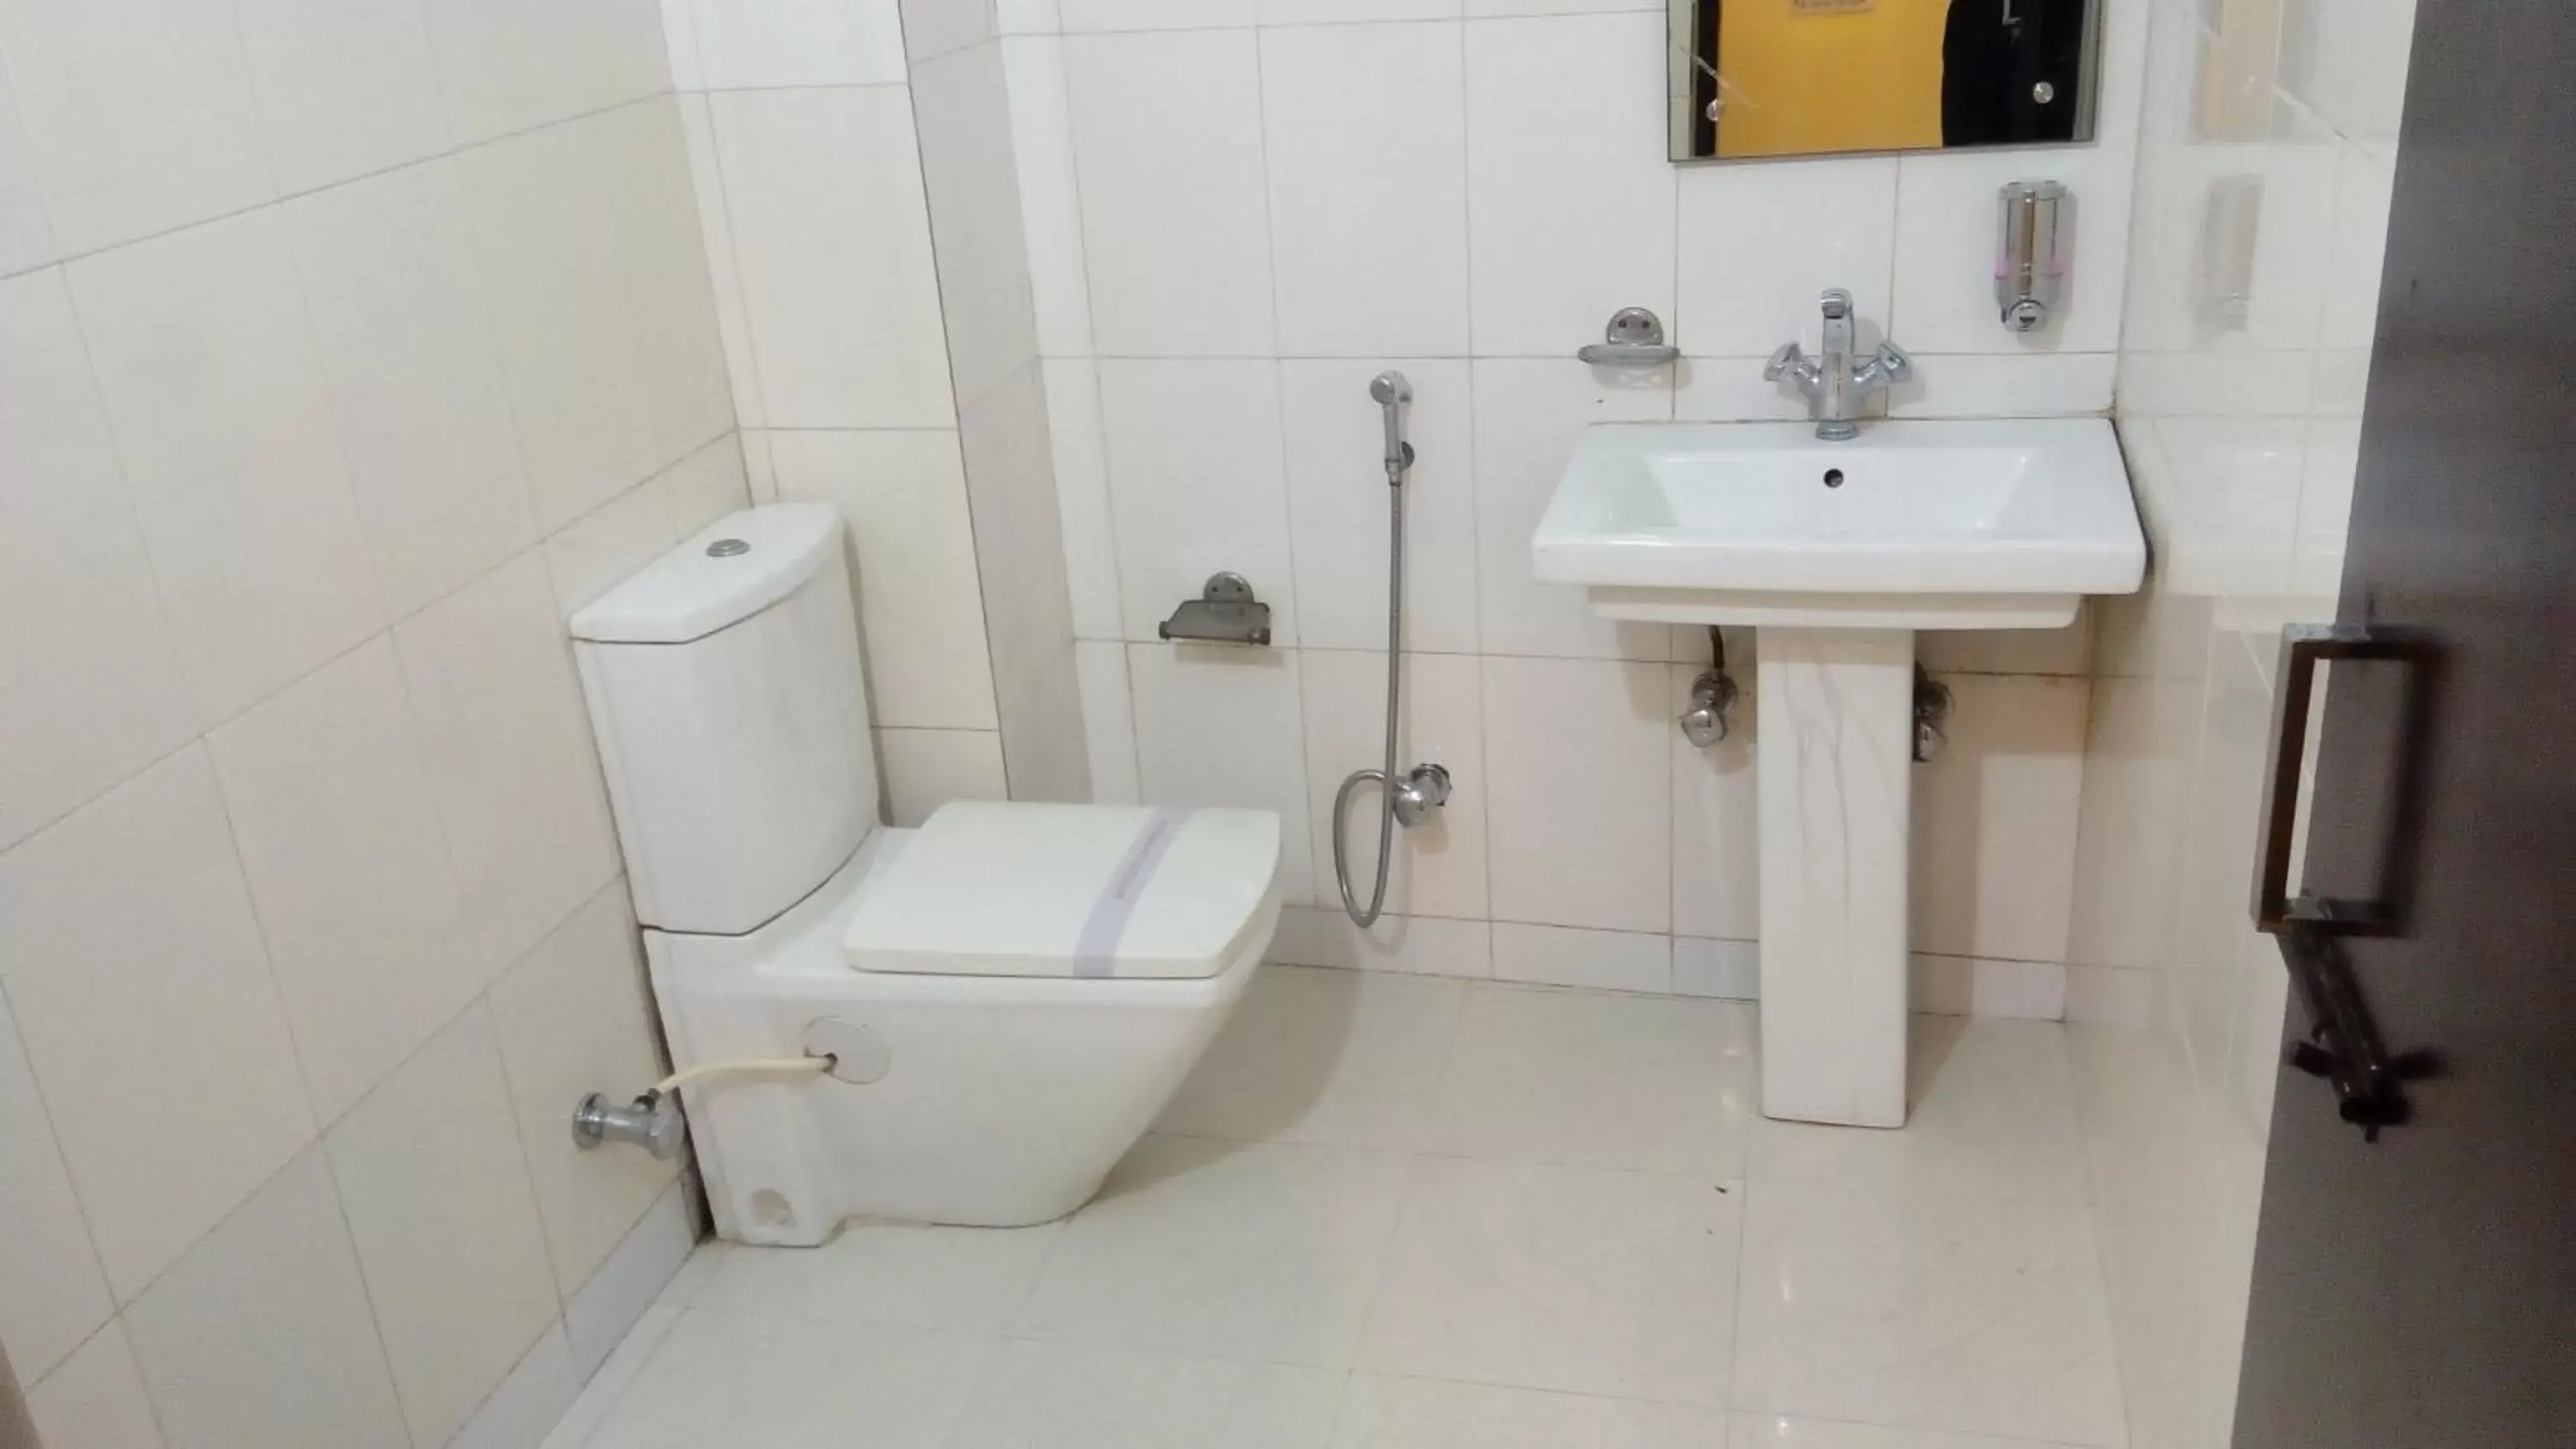 Bathroom in Hotel Su Shree Continental 5 Minutes Walk From New Delhi Railway Station